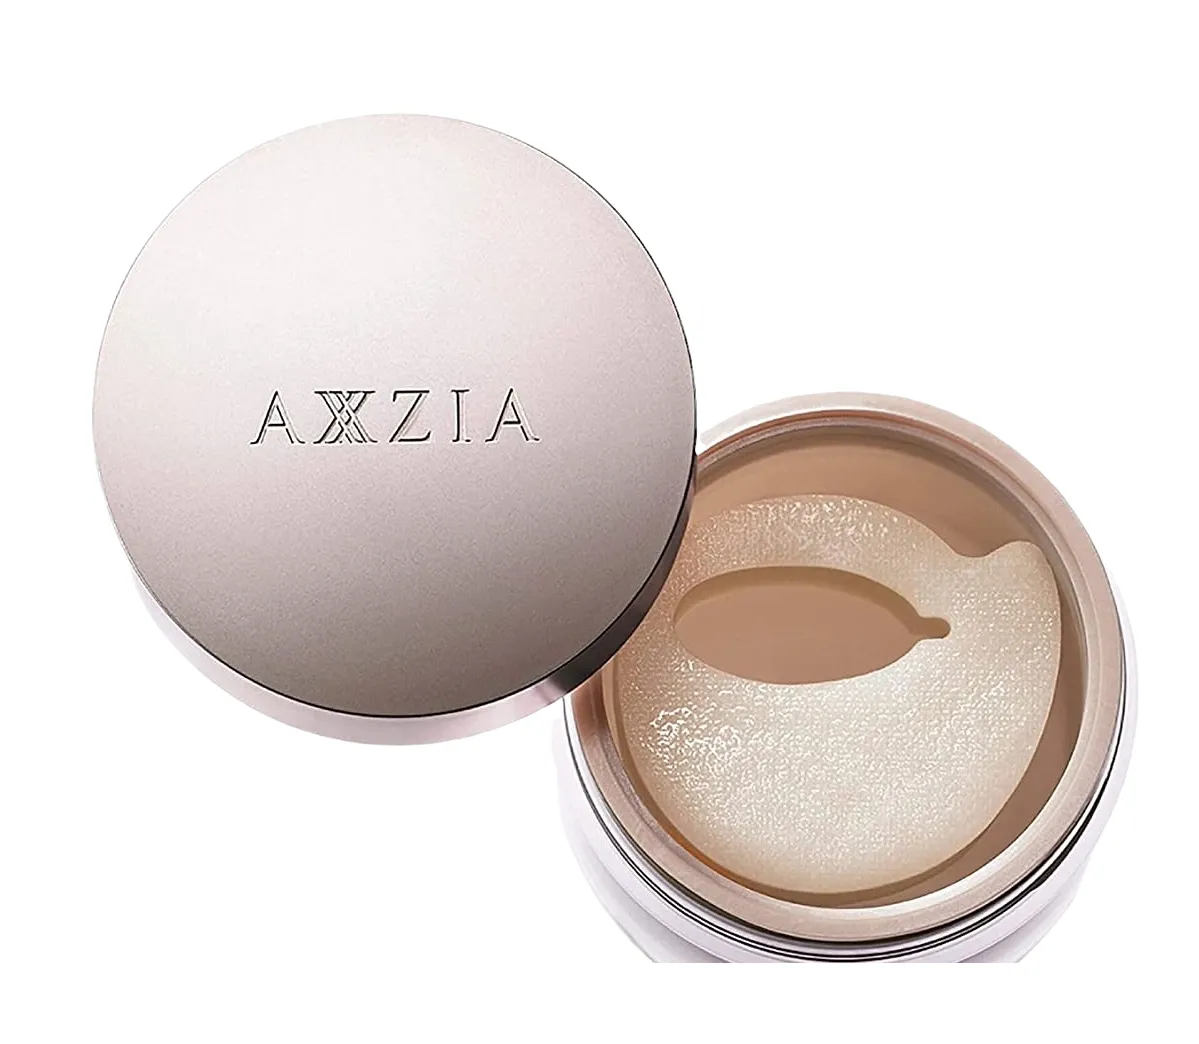 Круговые патчи для зоны вокруг глаз с выраженным лифтинг эффектом Axxzia Beauty Eyes Essence Sheet Premium